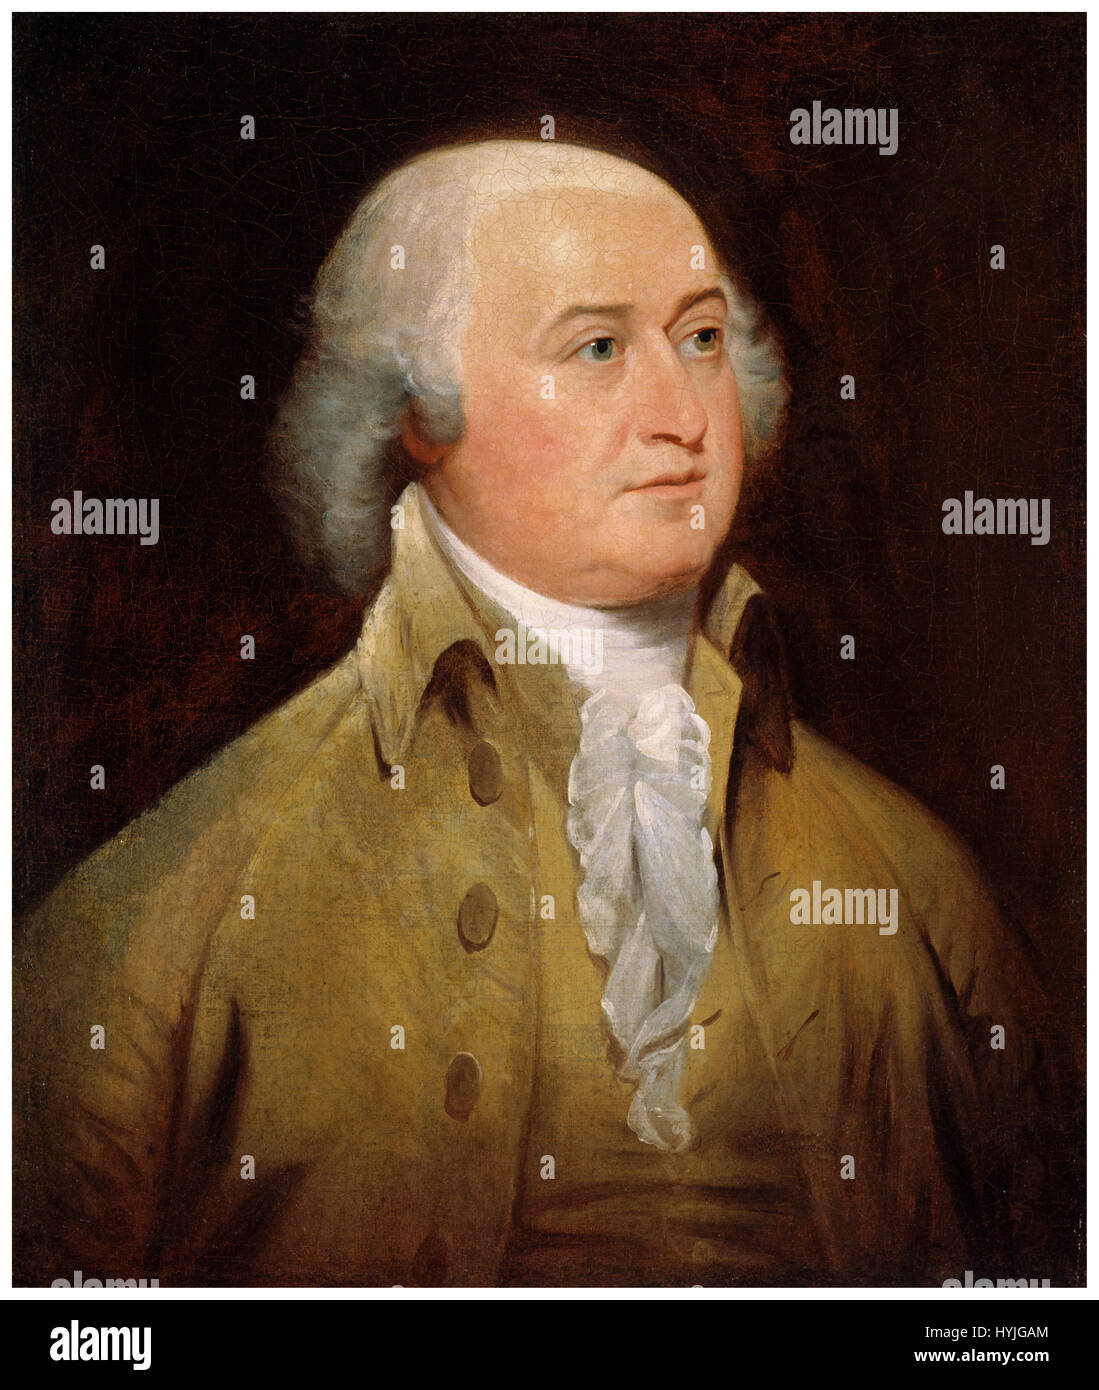 John Adams (30. Oktober 1735 – 4. Juli 1826) war ein US-amerikanischer Jurist, Autor, Staatsmann und Diplomat. Er diente als der zweite Präsident der USA (1797 – 1801), der erste Vizepräsident (1789 – 1797), und als einer der Gründerväter war einer der Führer der amerikanischen Unabhängigkeit von Großbritannien. Stockfoto